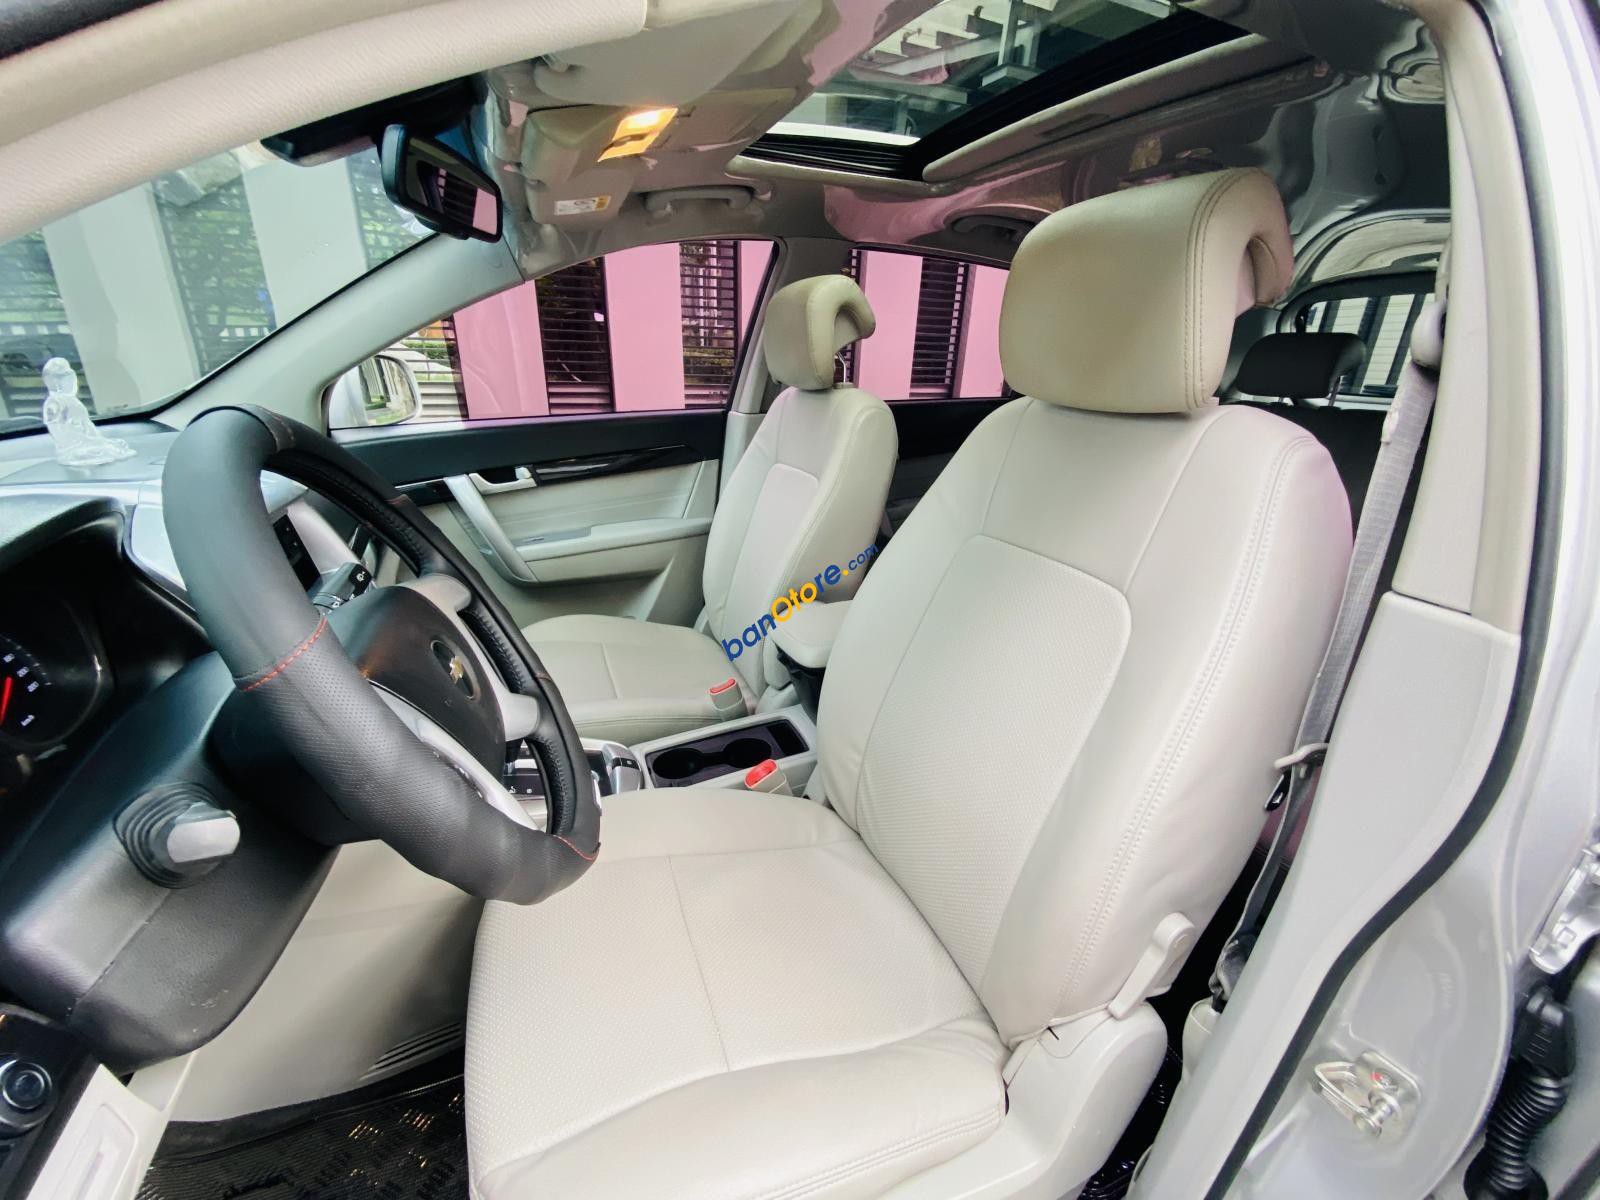 Chevrolet Captiva 2015 - Model 2015 full option bản cao cấp nhất